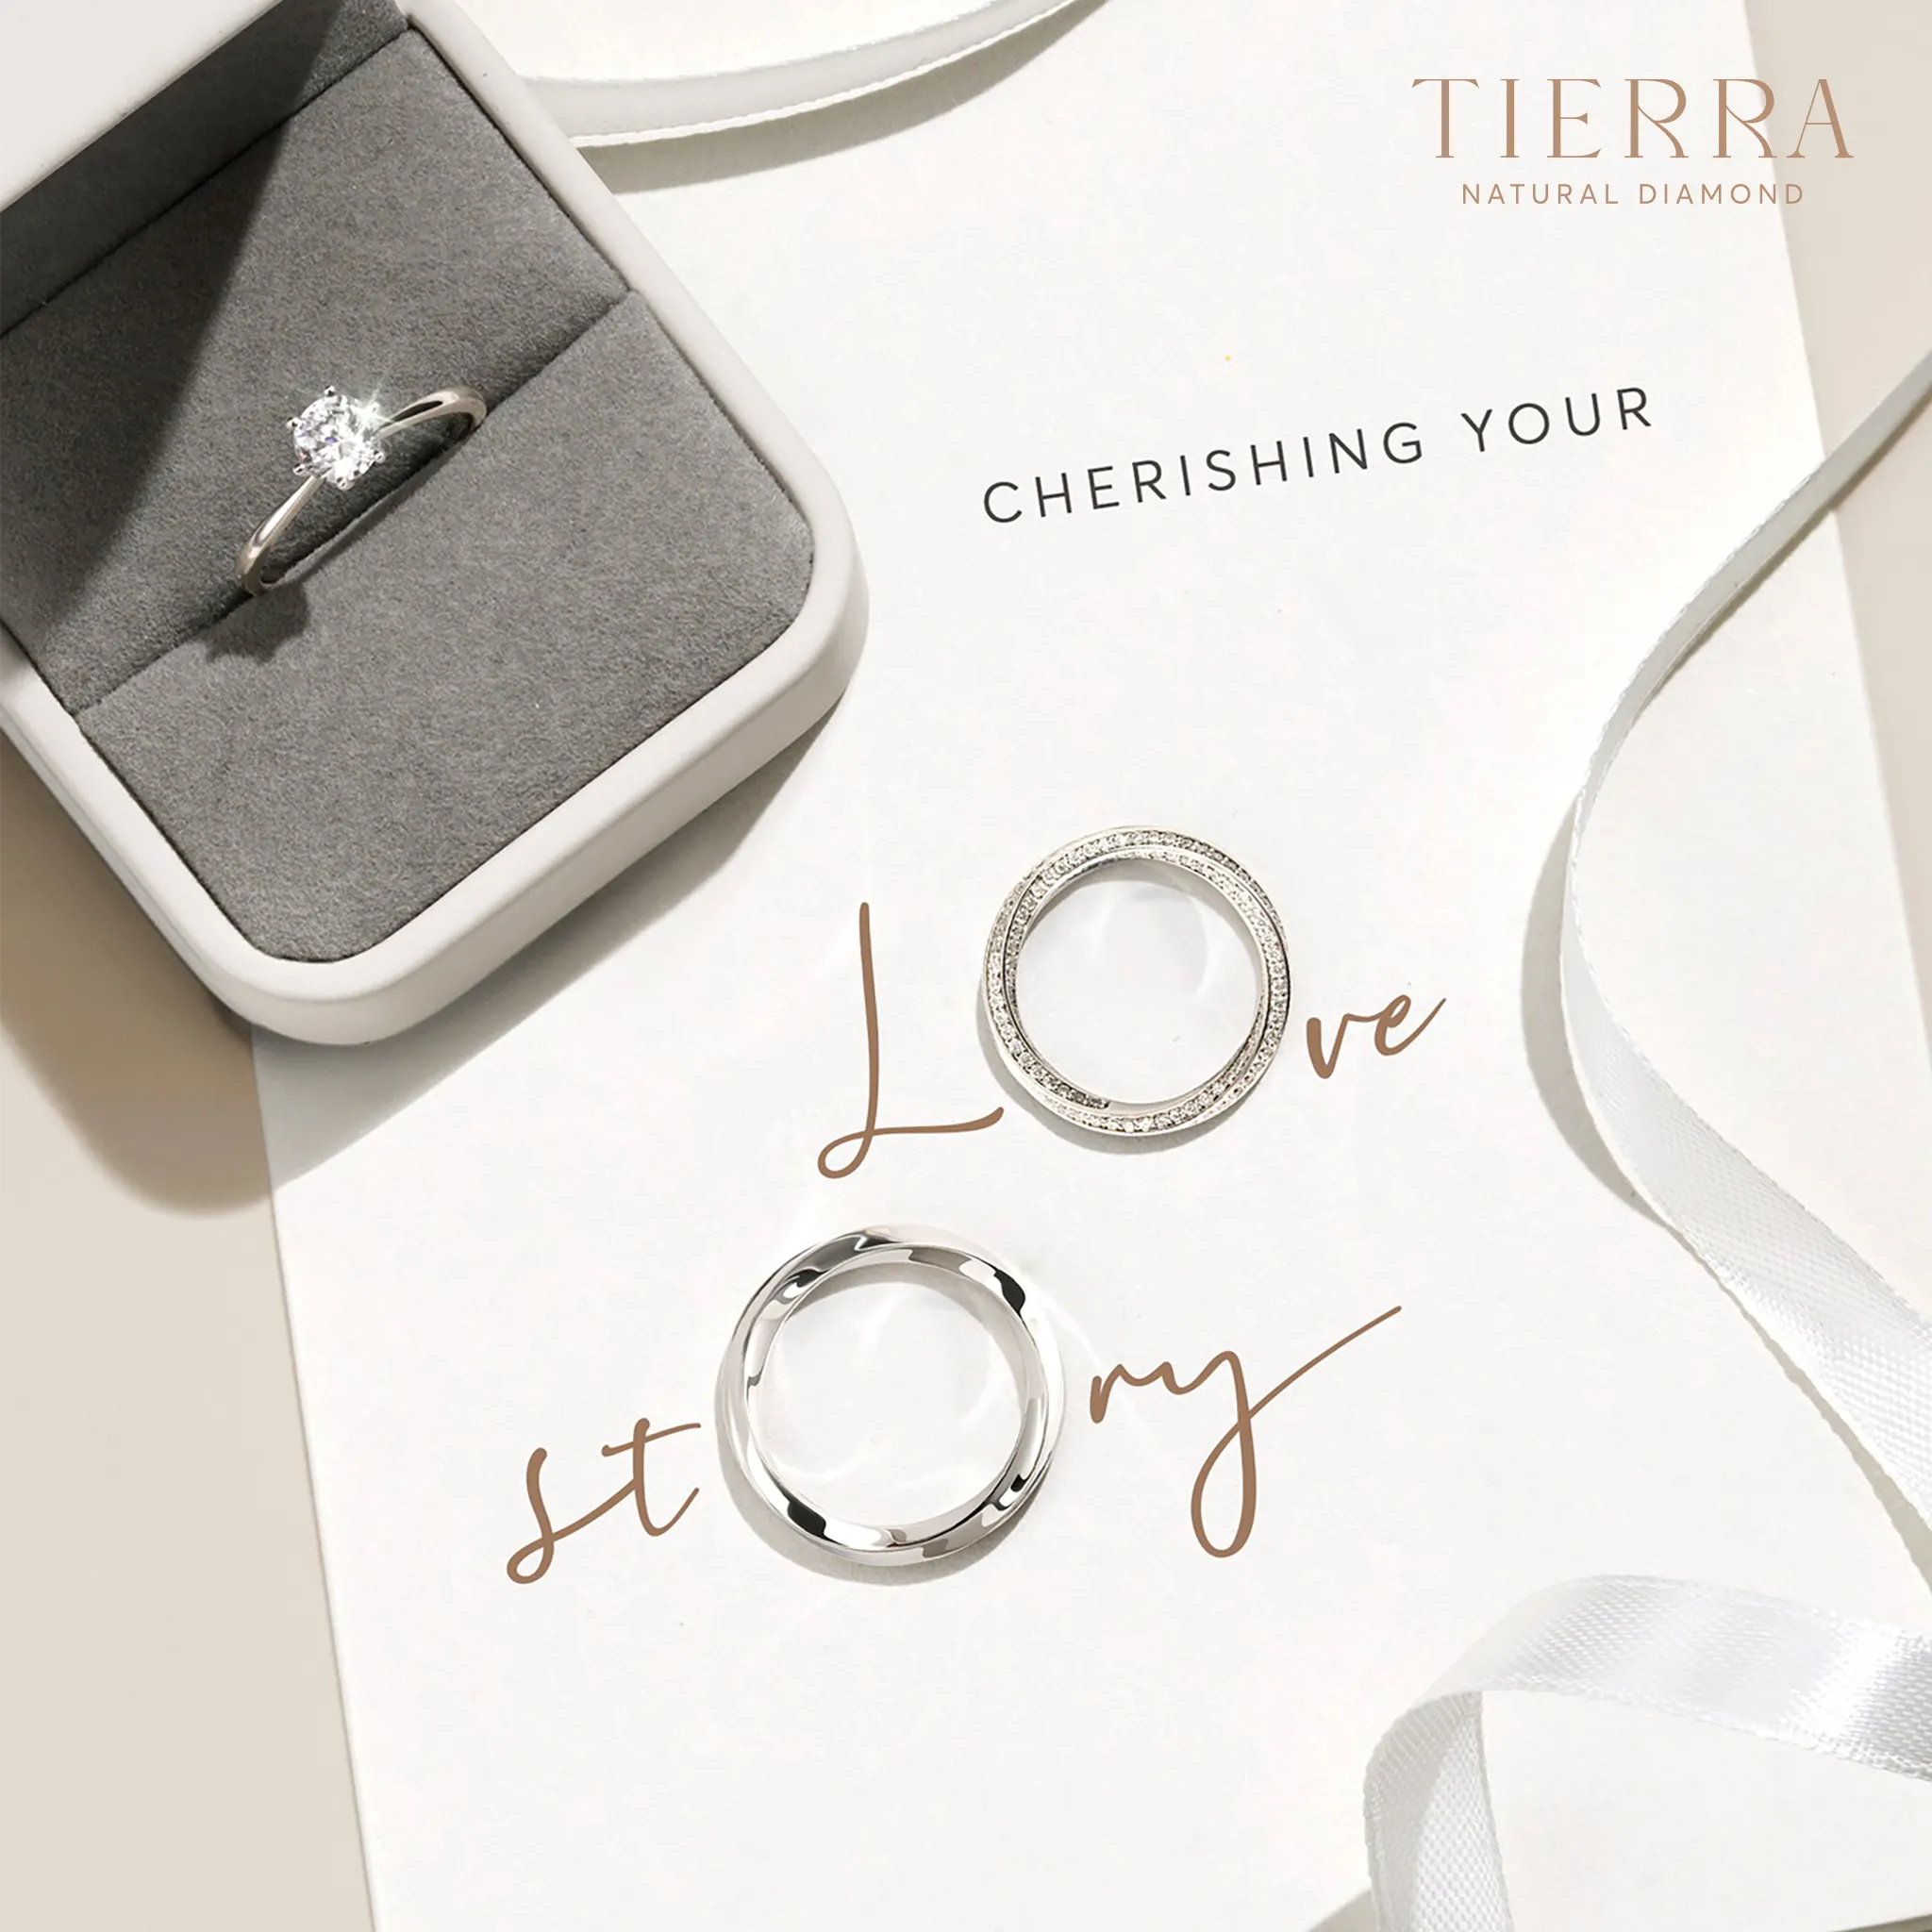 Tierra Diamond - thương hiệu trang sức cao cấp